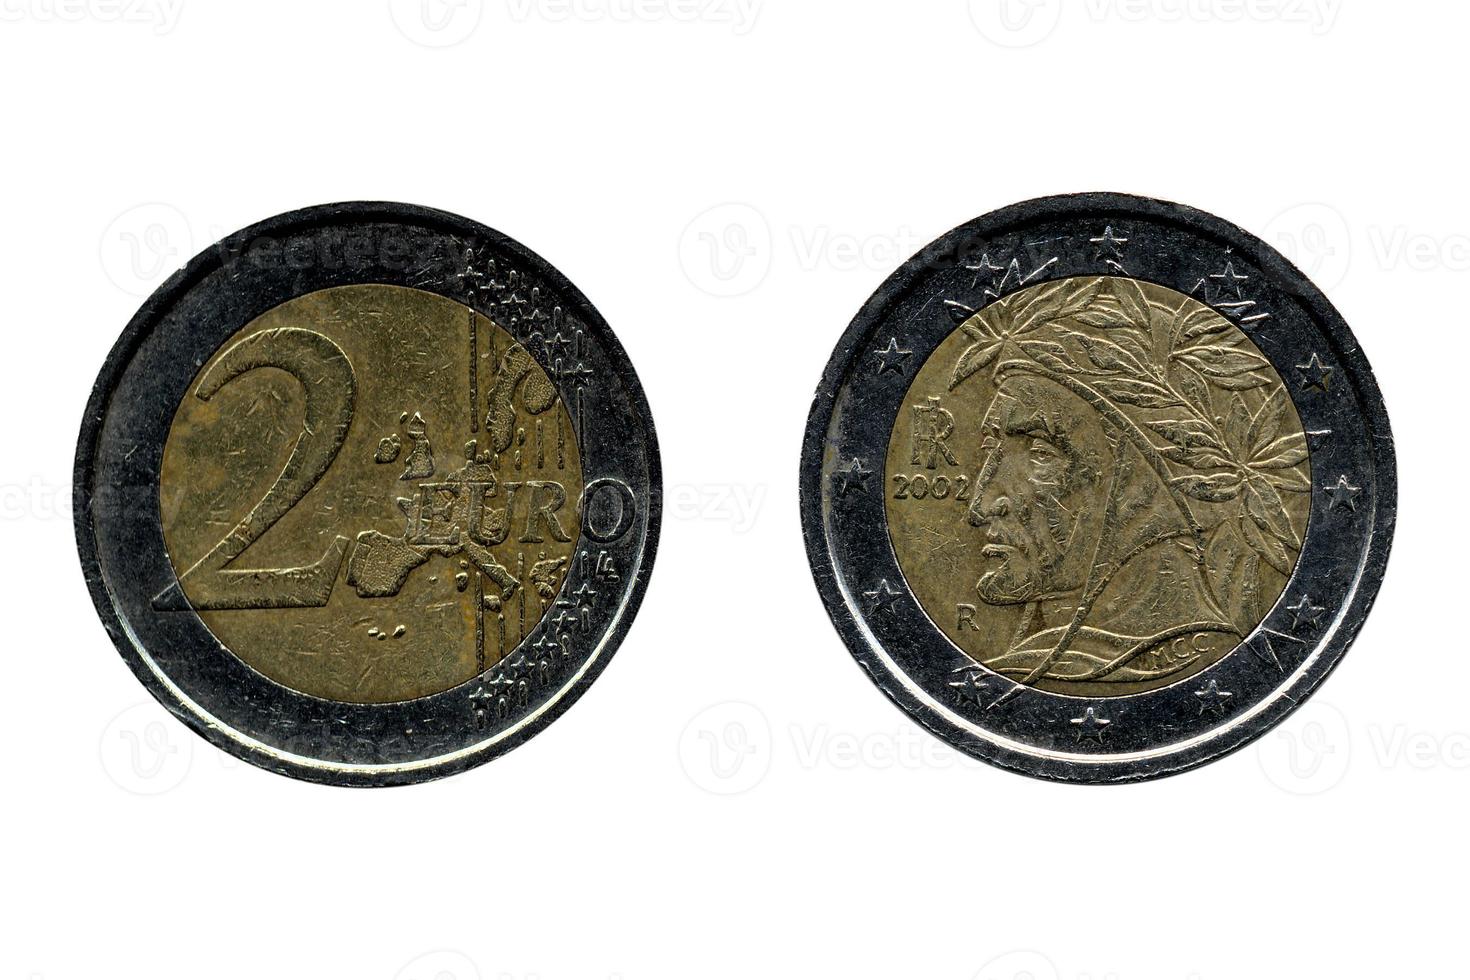 moneda de dos euros foto